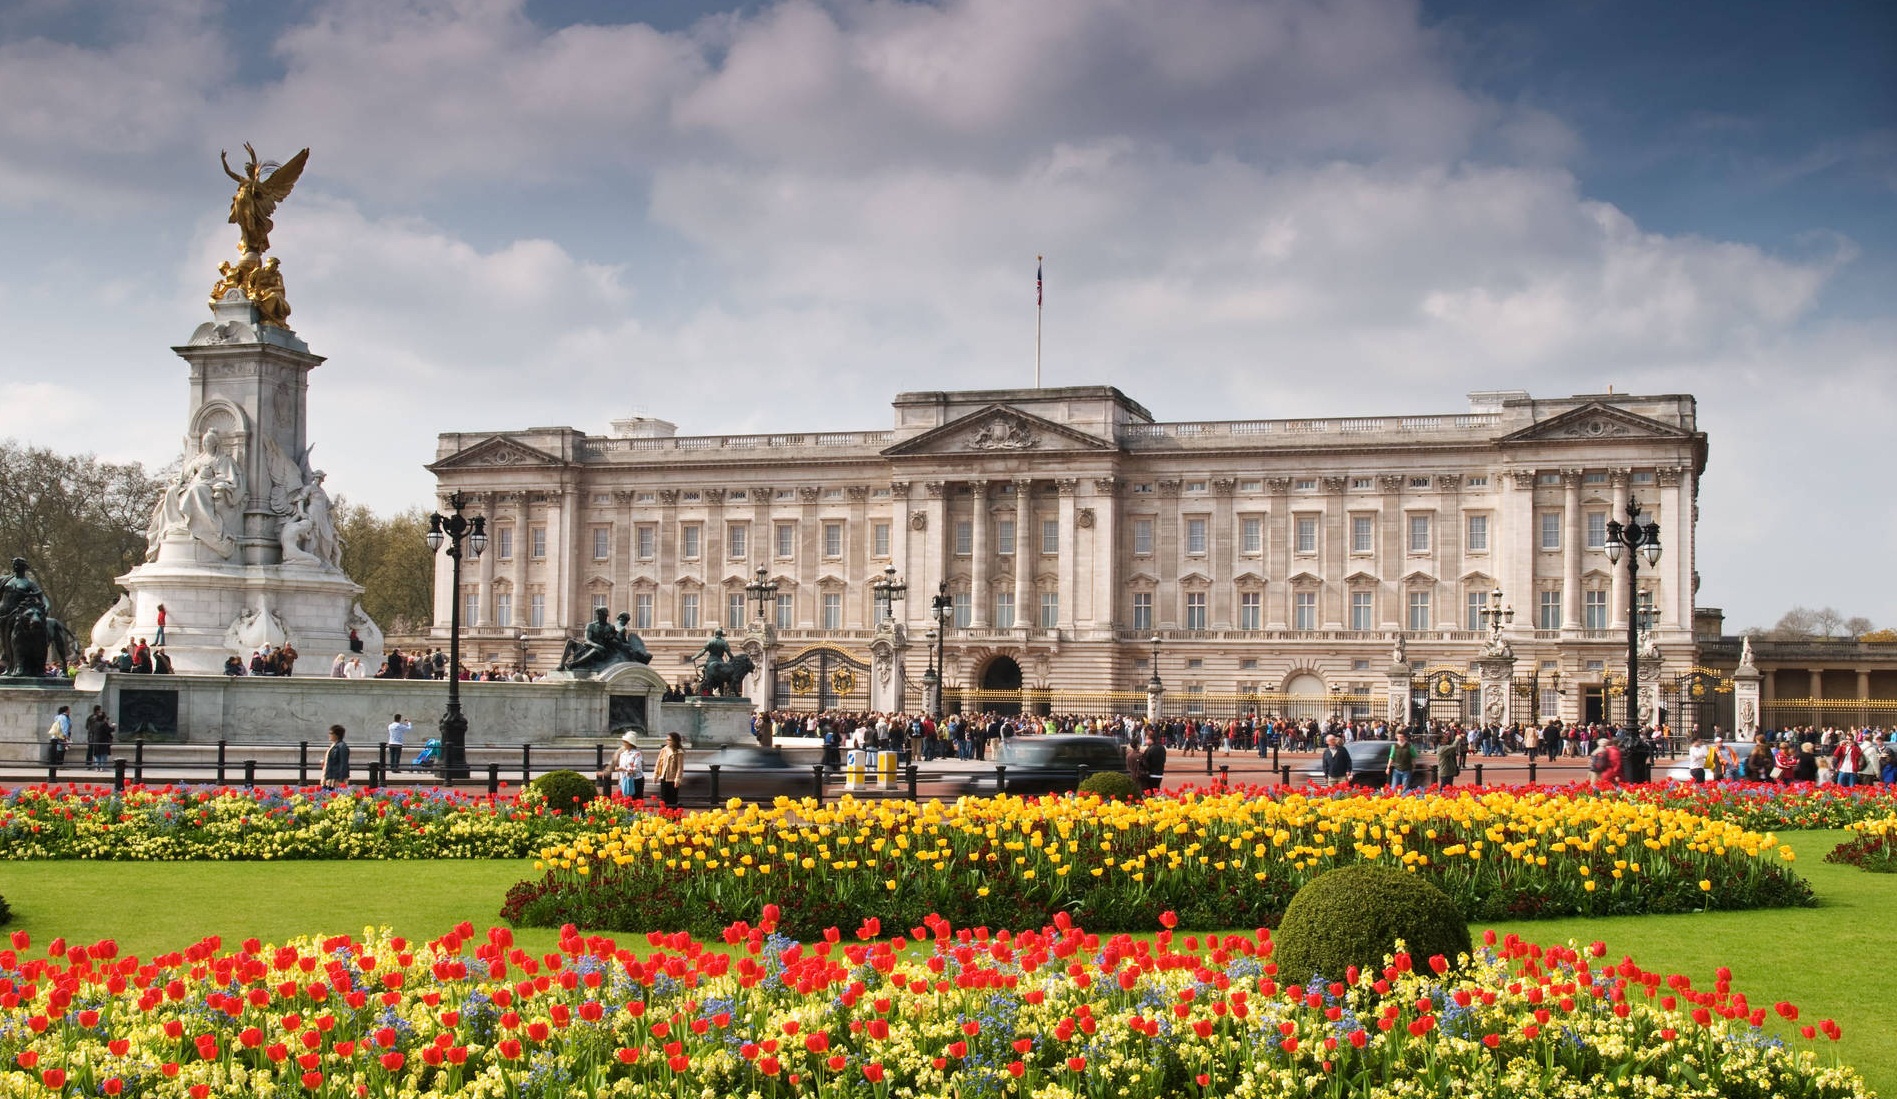 Taç giyme törenine günler kala Buckingham Sarayı nda büyük panik!